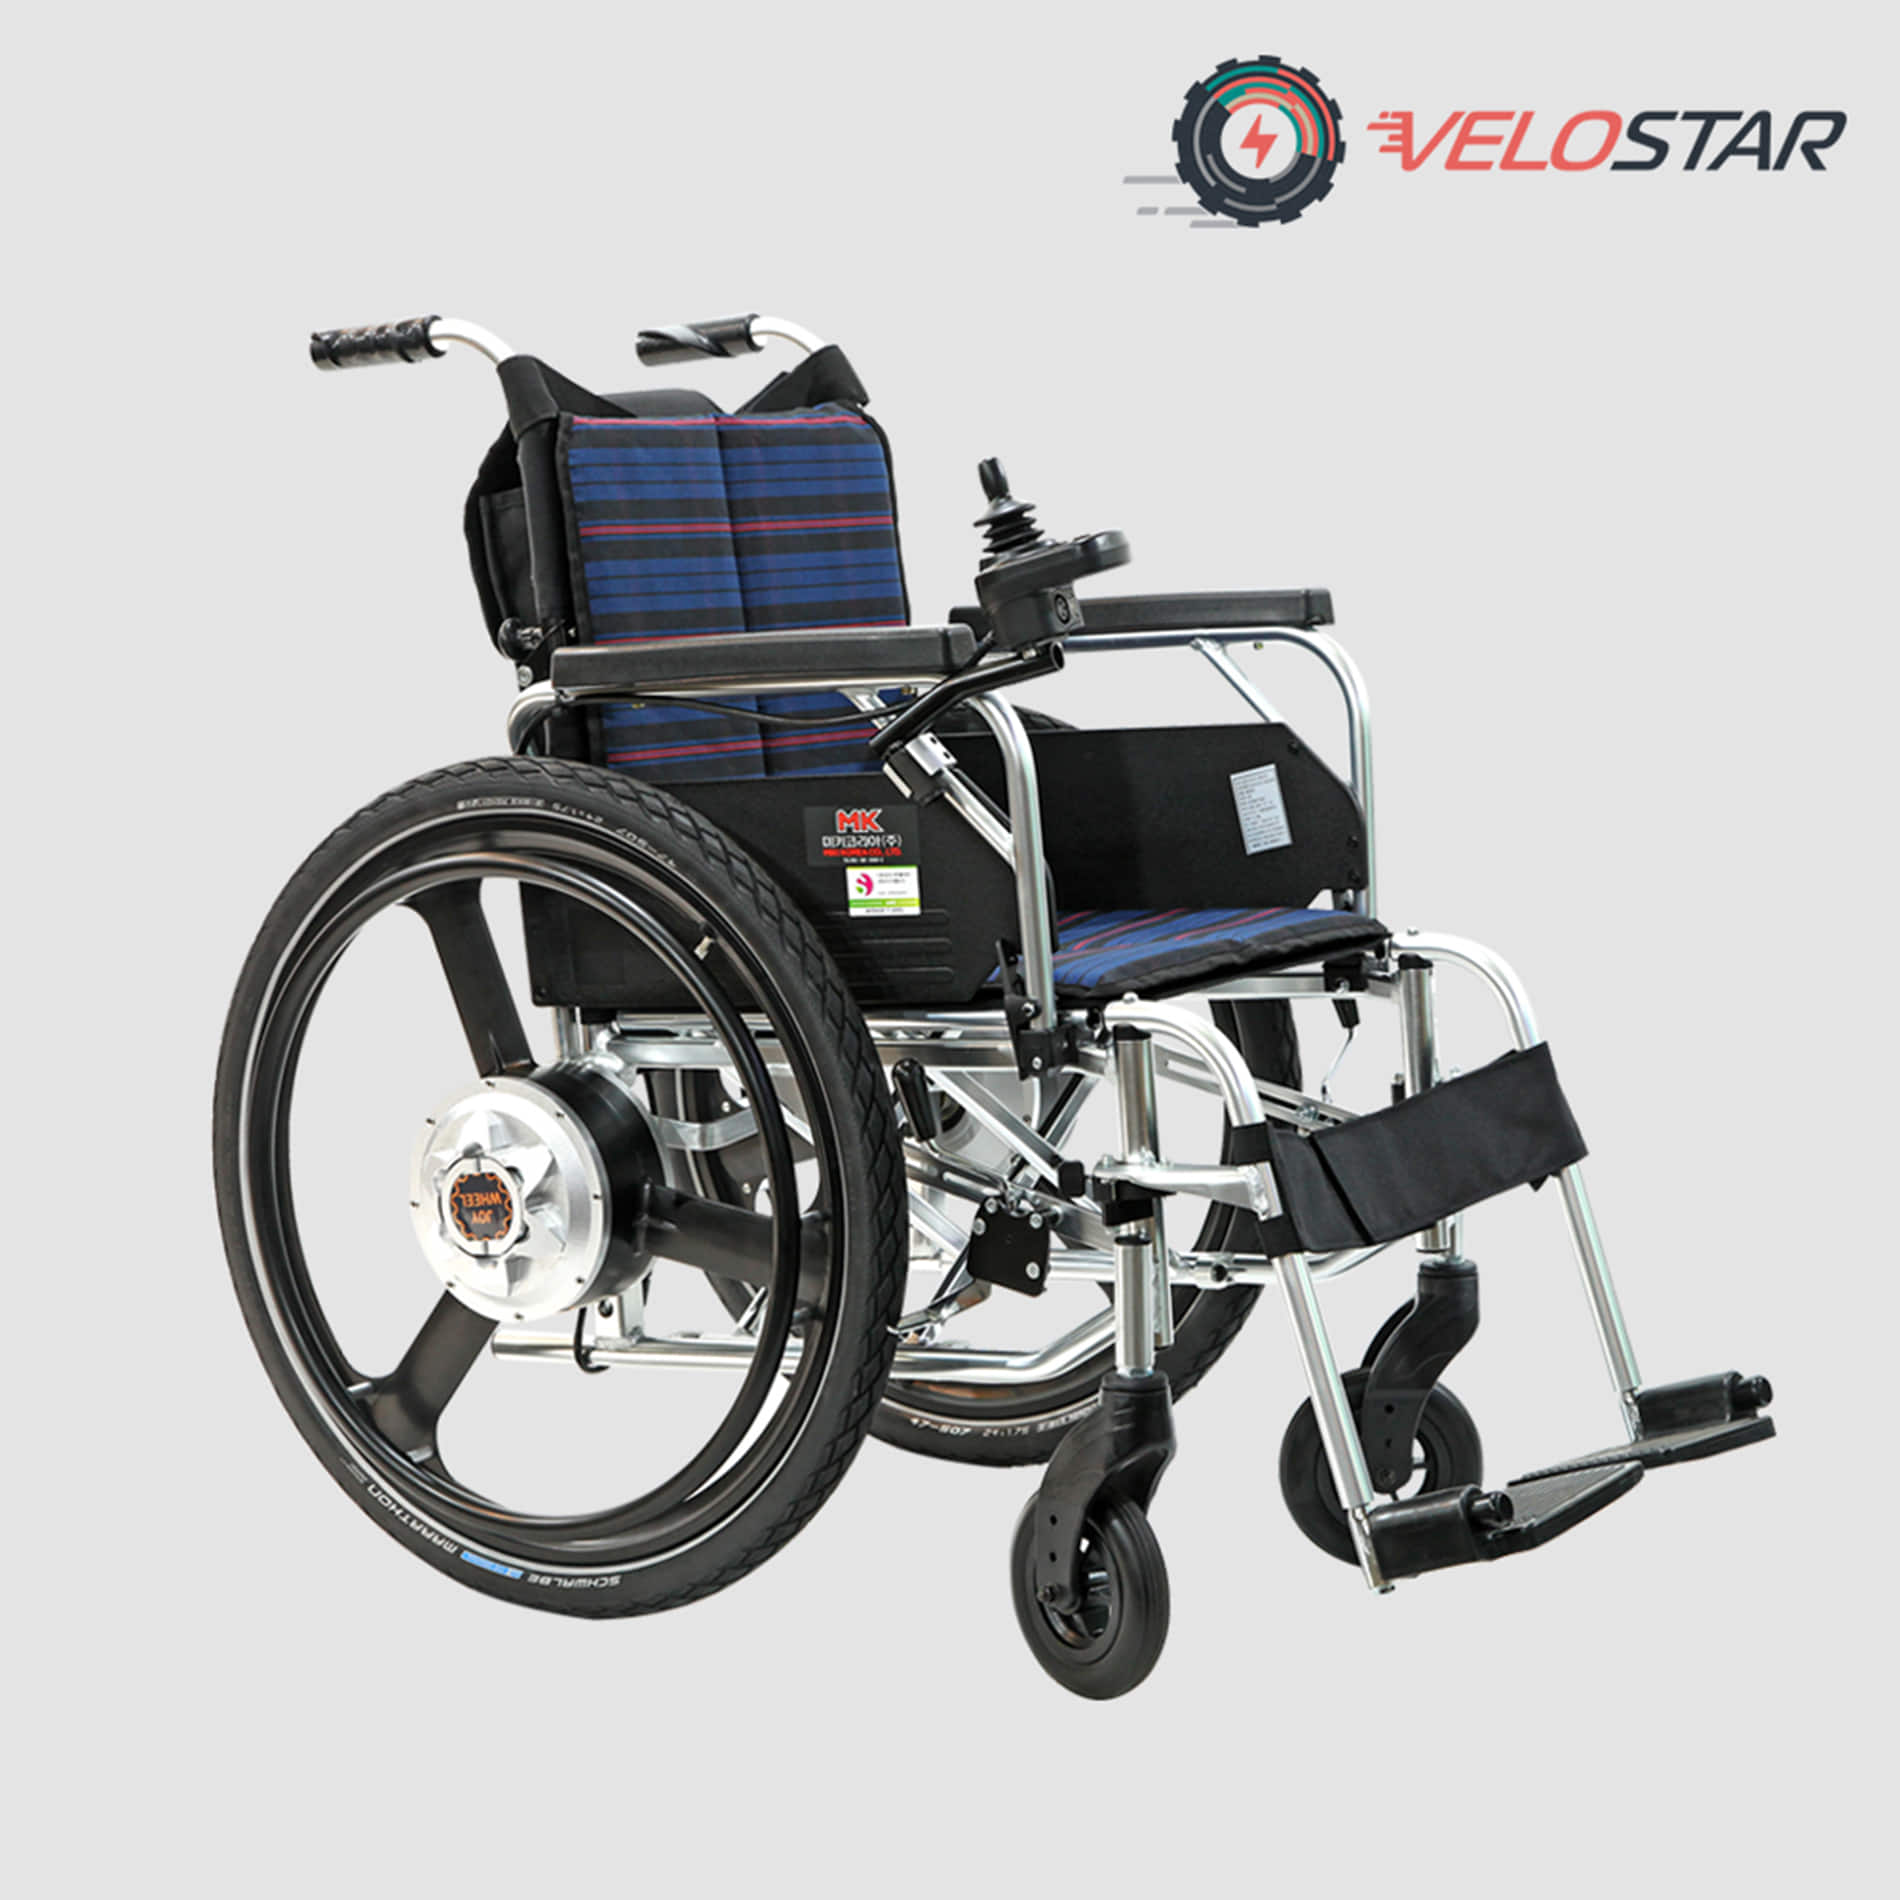 조이-미키 국내 휠체어 제조사 미키 미라지에 조이휠 결합한 제품